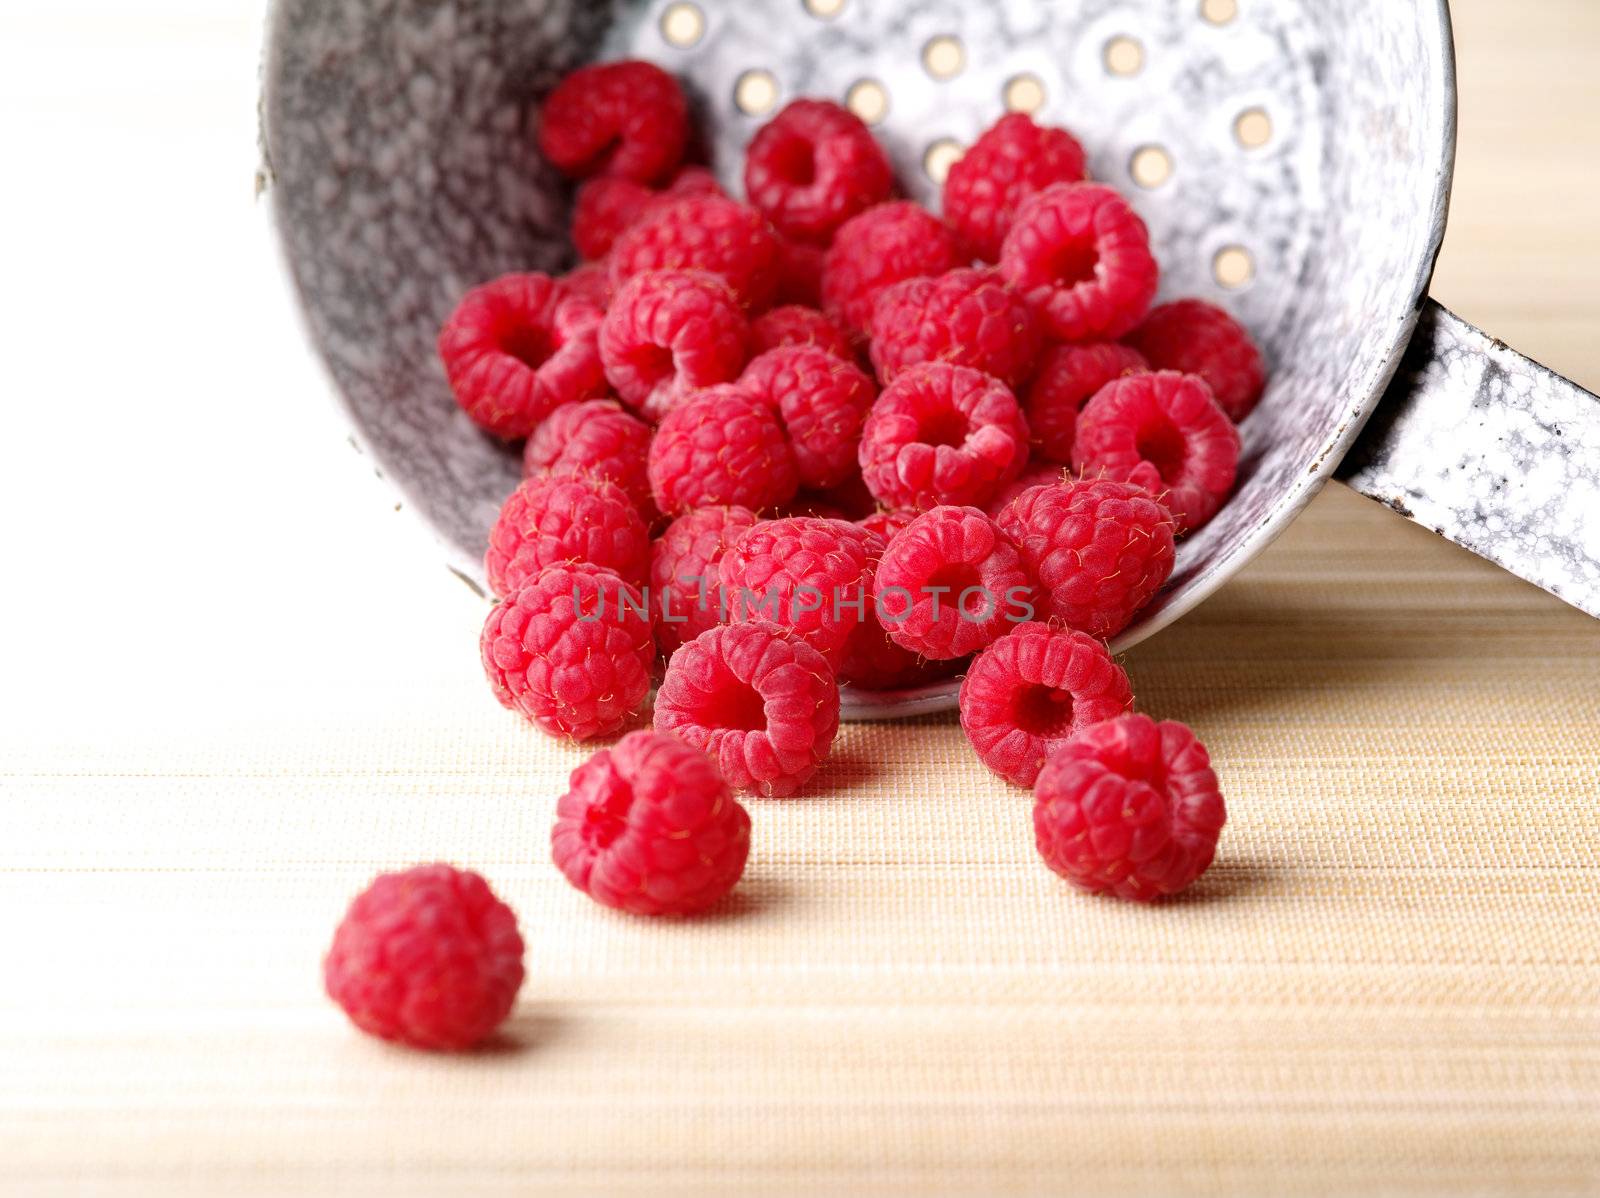 Raspberries by sumners